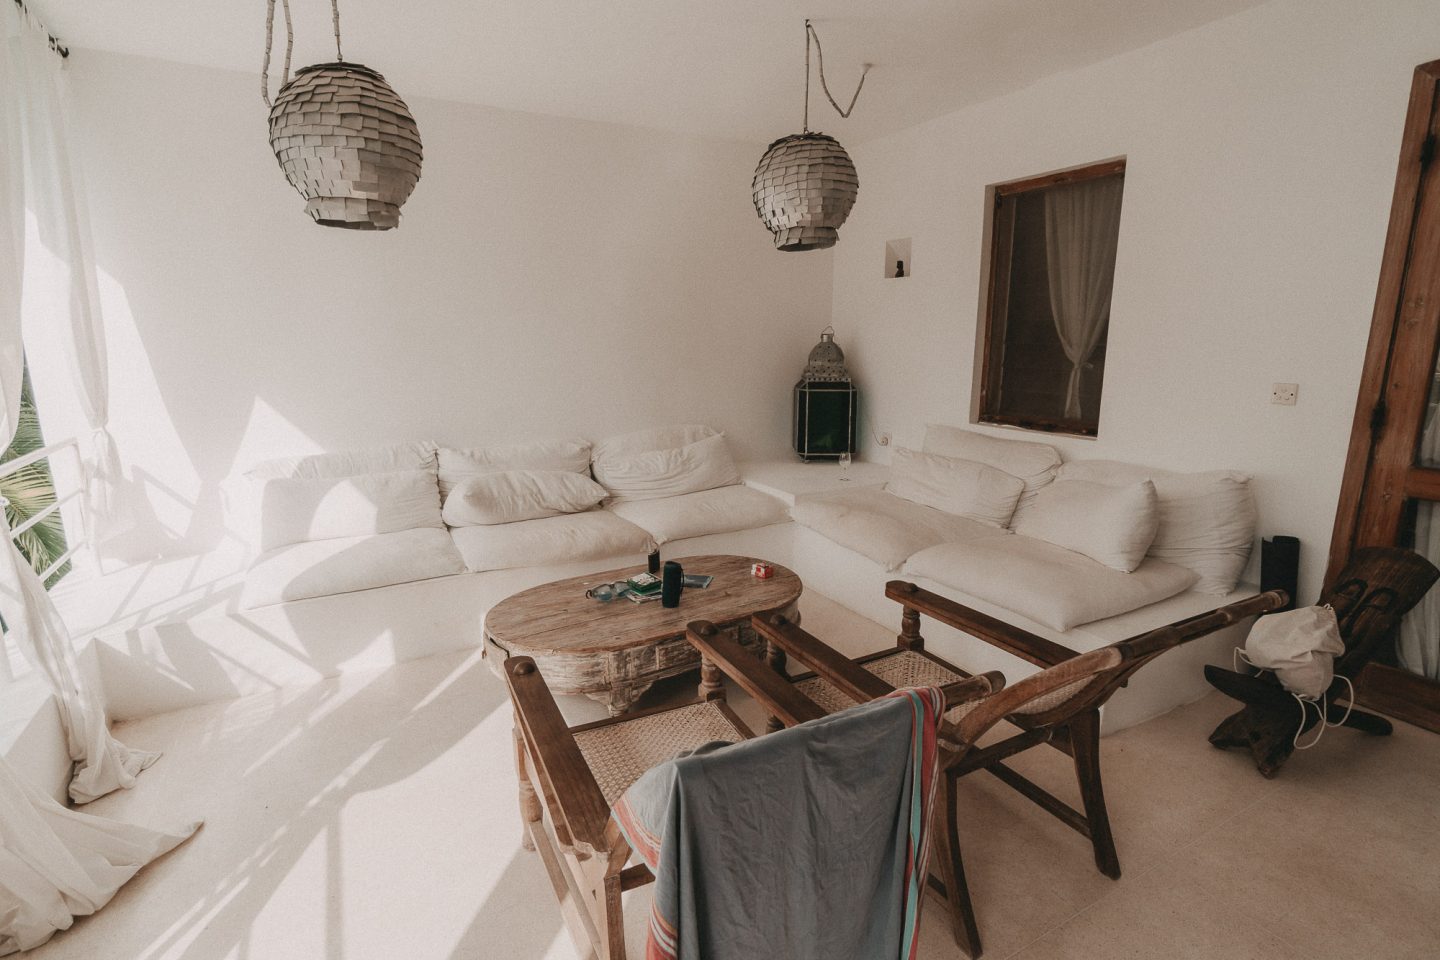 Urlaub in Kenia: Unser Unterkunft via Airbnb